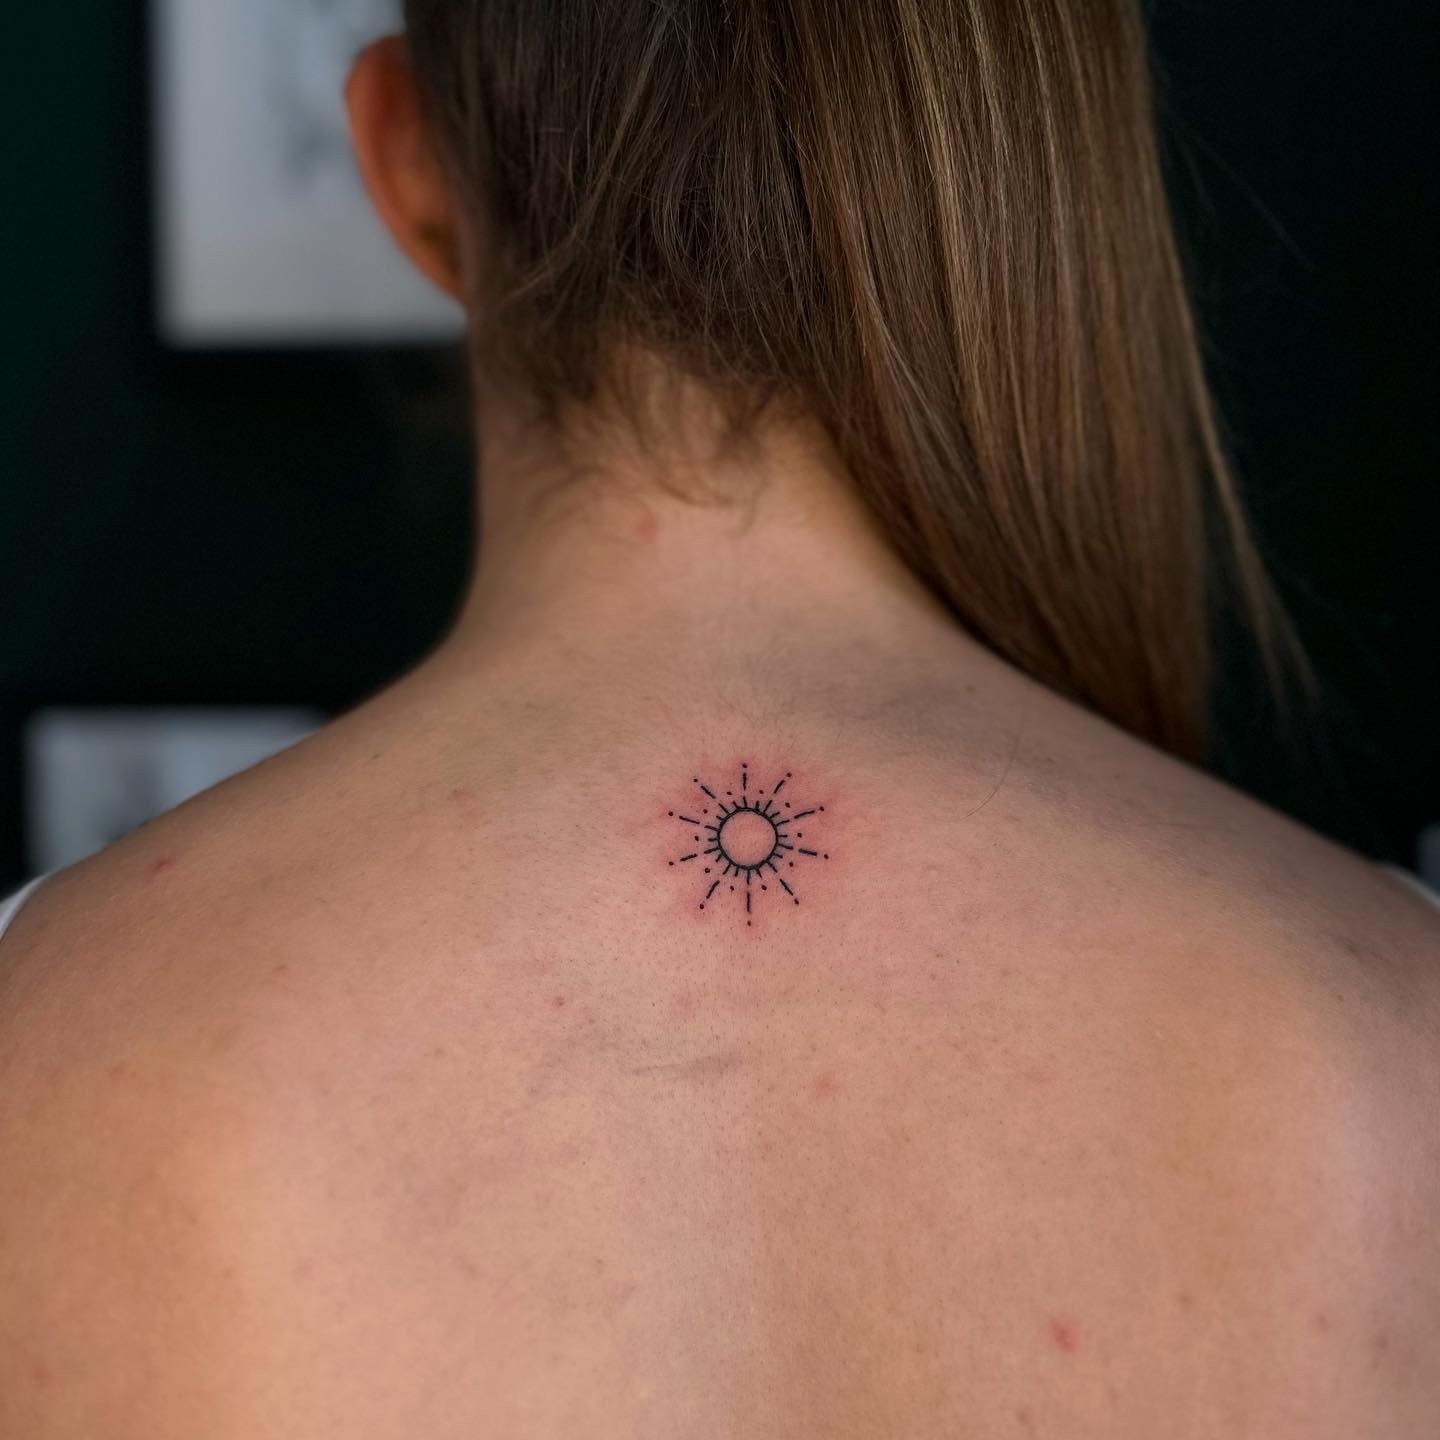 _sun_
.
.
#sun #suntattoo #tattoo #tattoos #tattooideas #tattooinspiration #flas